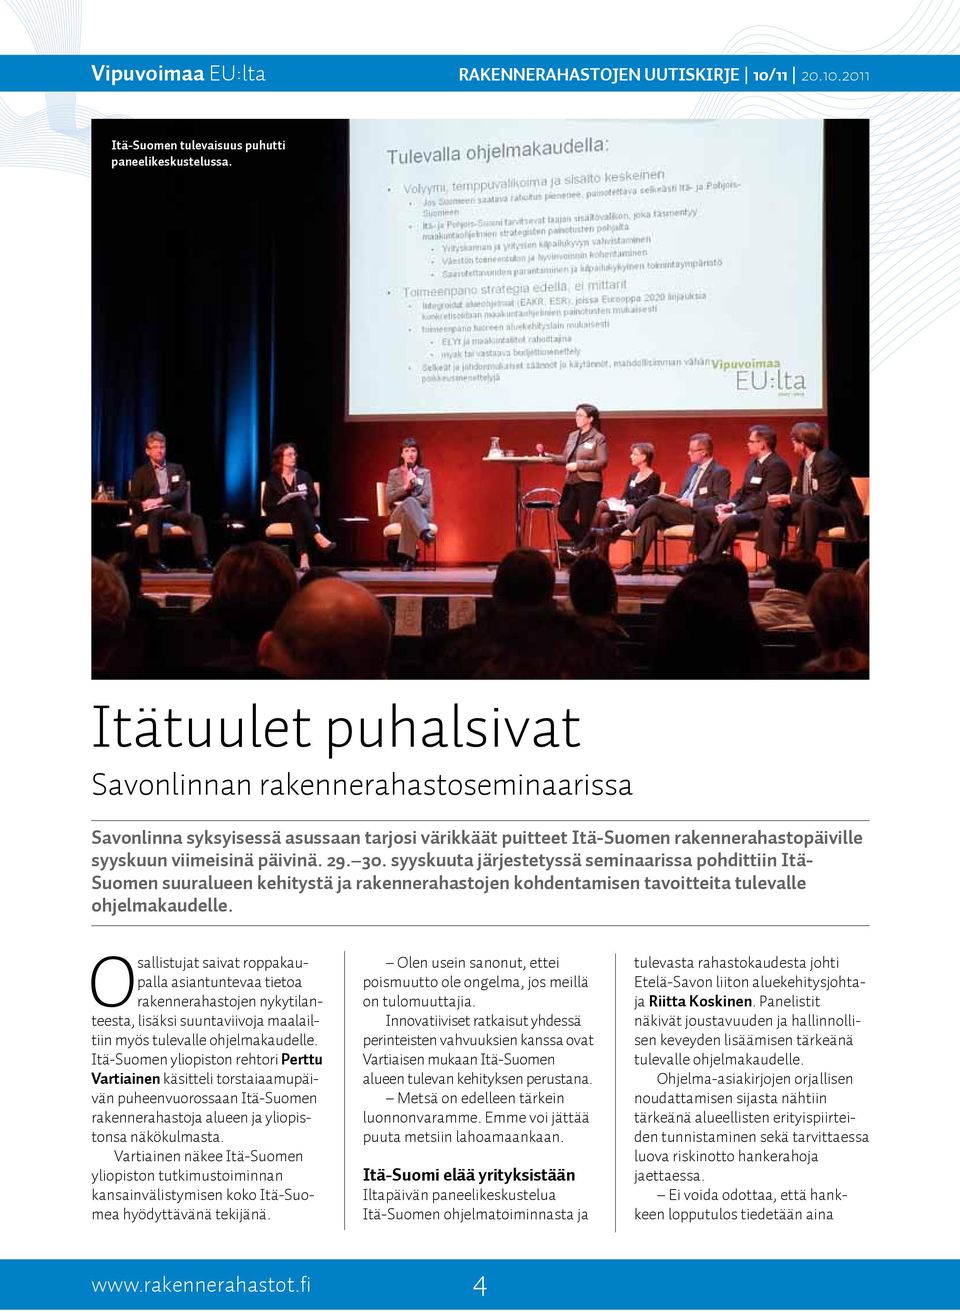 syyskuuta järjestetyssä seminaarissa pohdittiin Itä- Suomen suuralueen kehitystä ja rakennerahastojen kohdentamisen tavoitteita tulevalle ohjelmakaudelle.